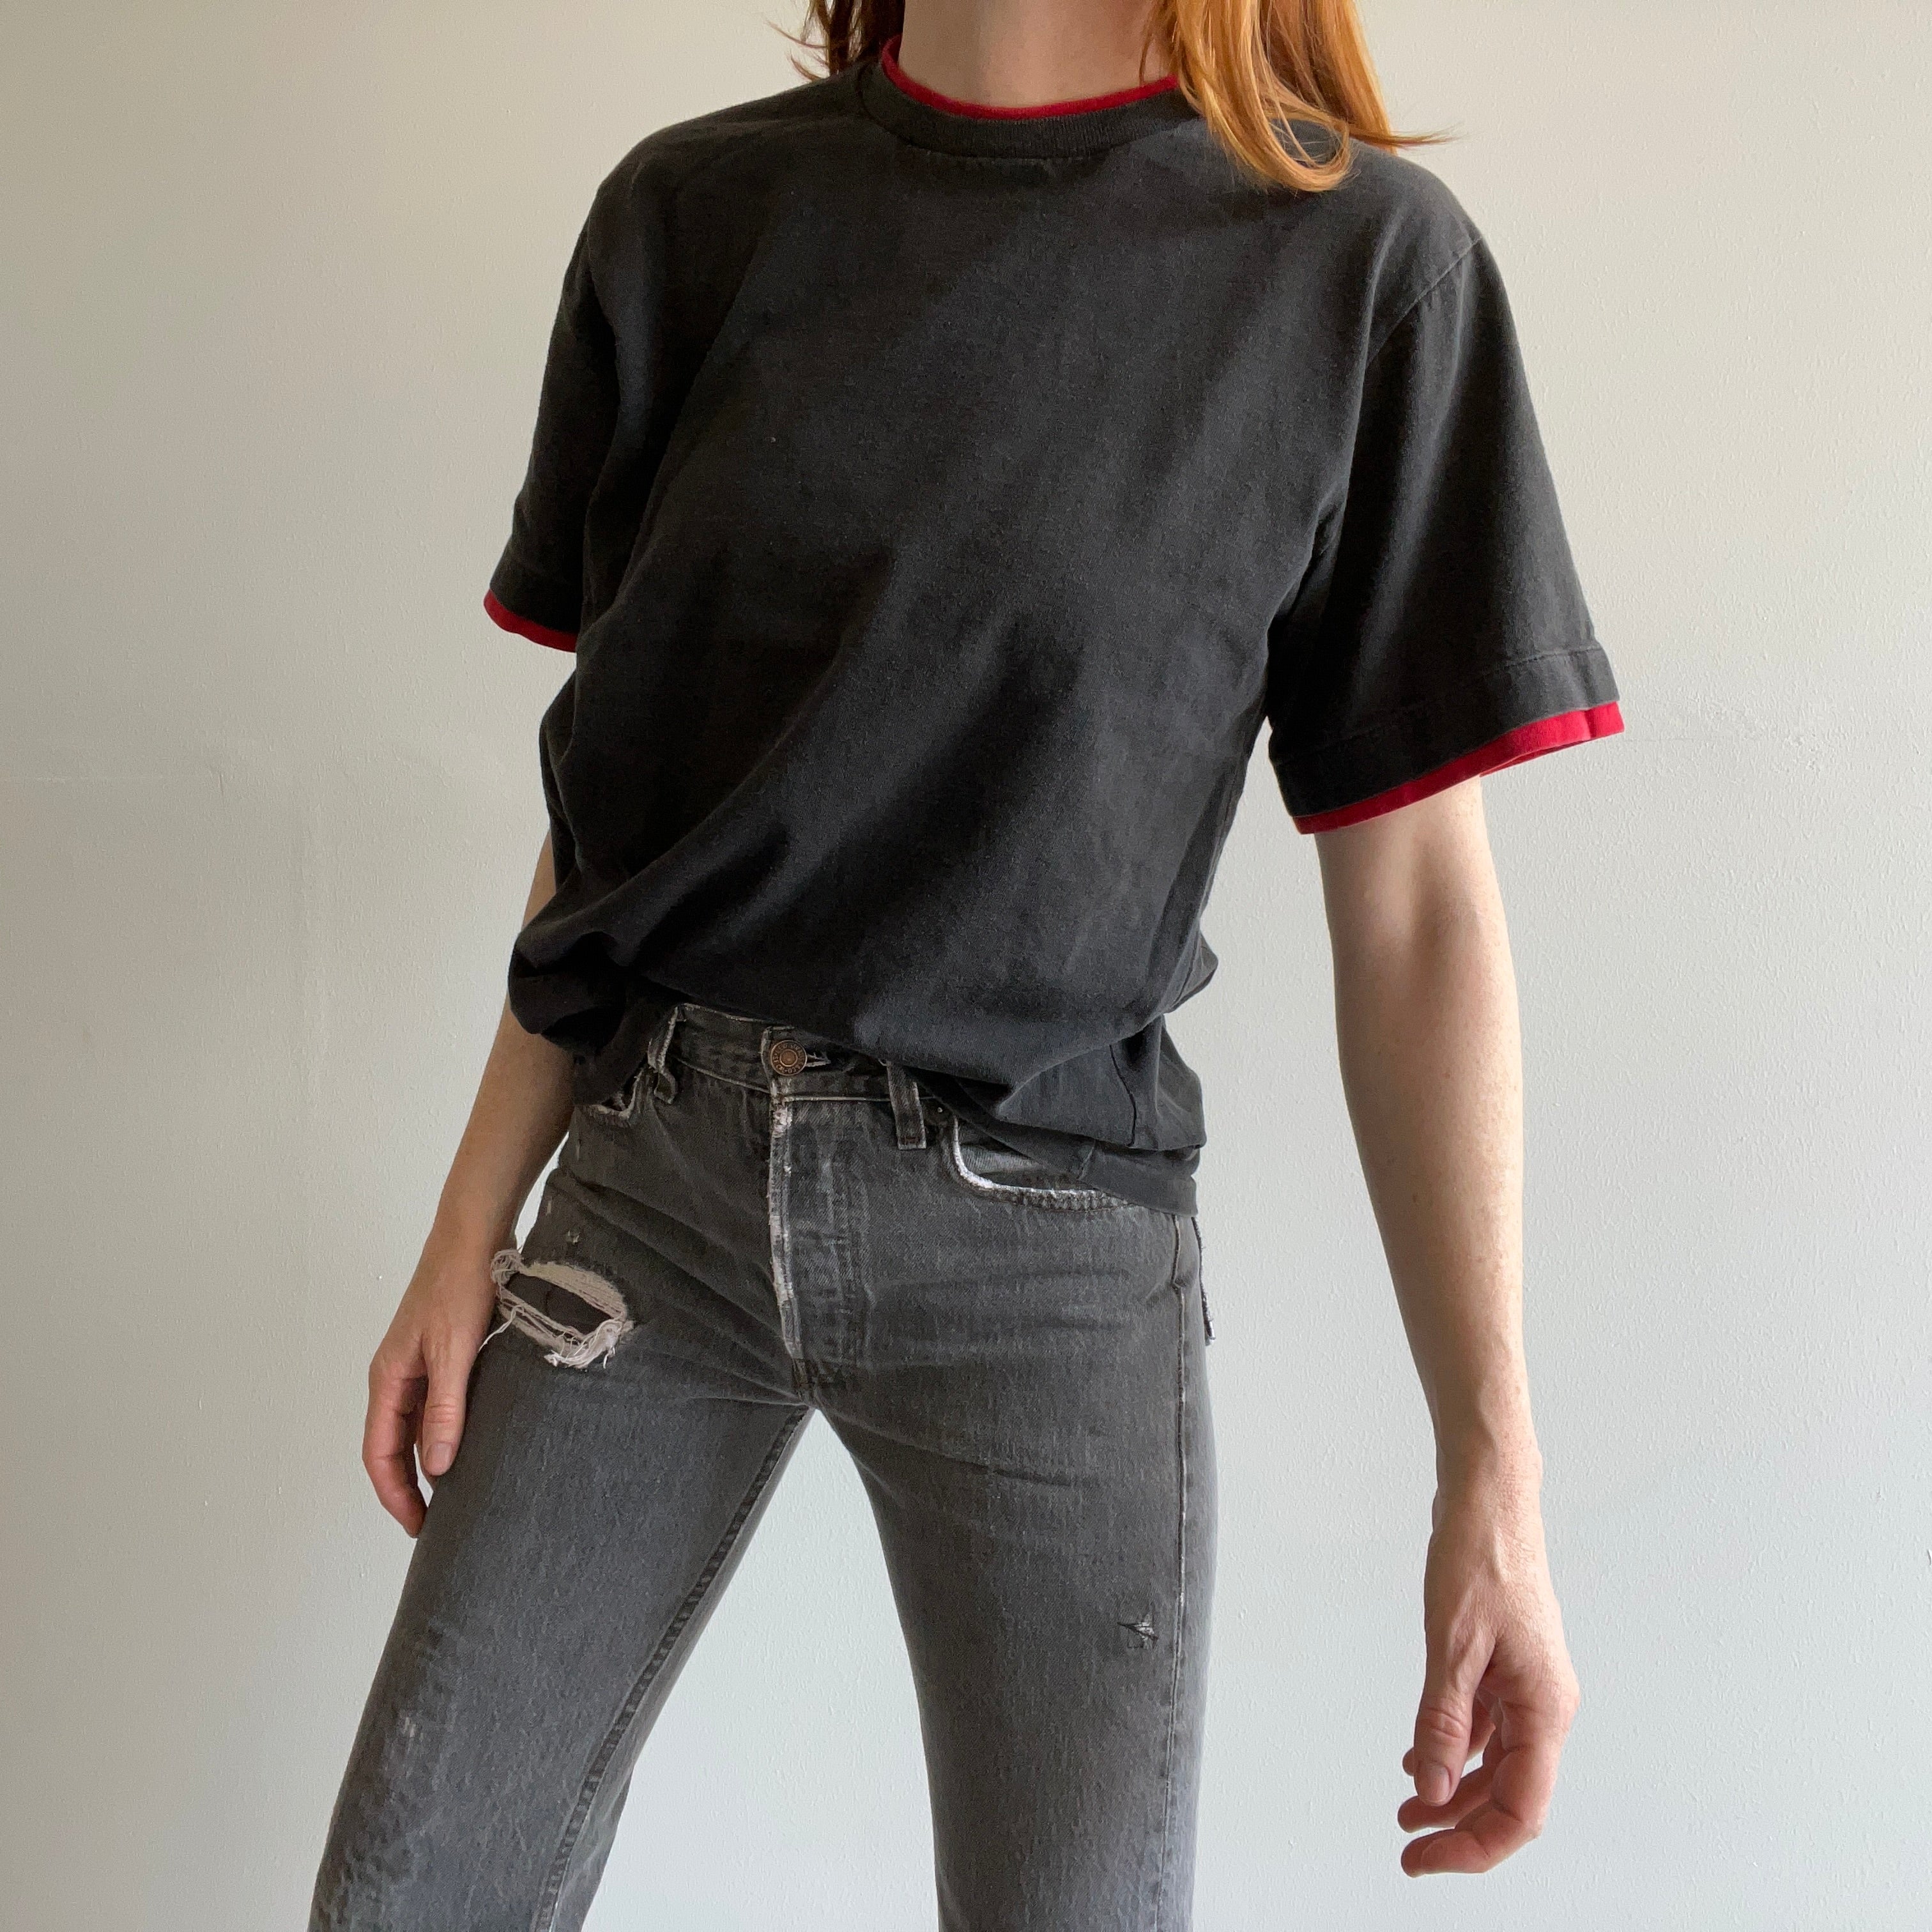 T-shirt en coton blanc bicolore noir et rouge des années 1980/90